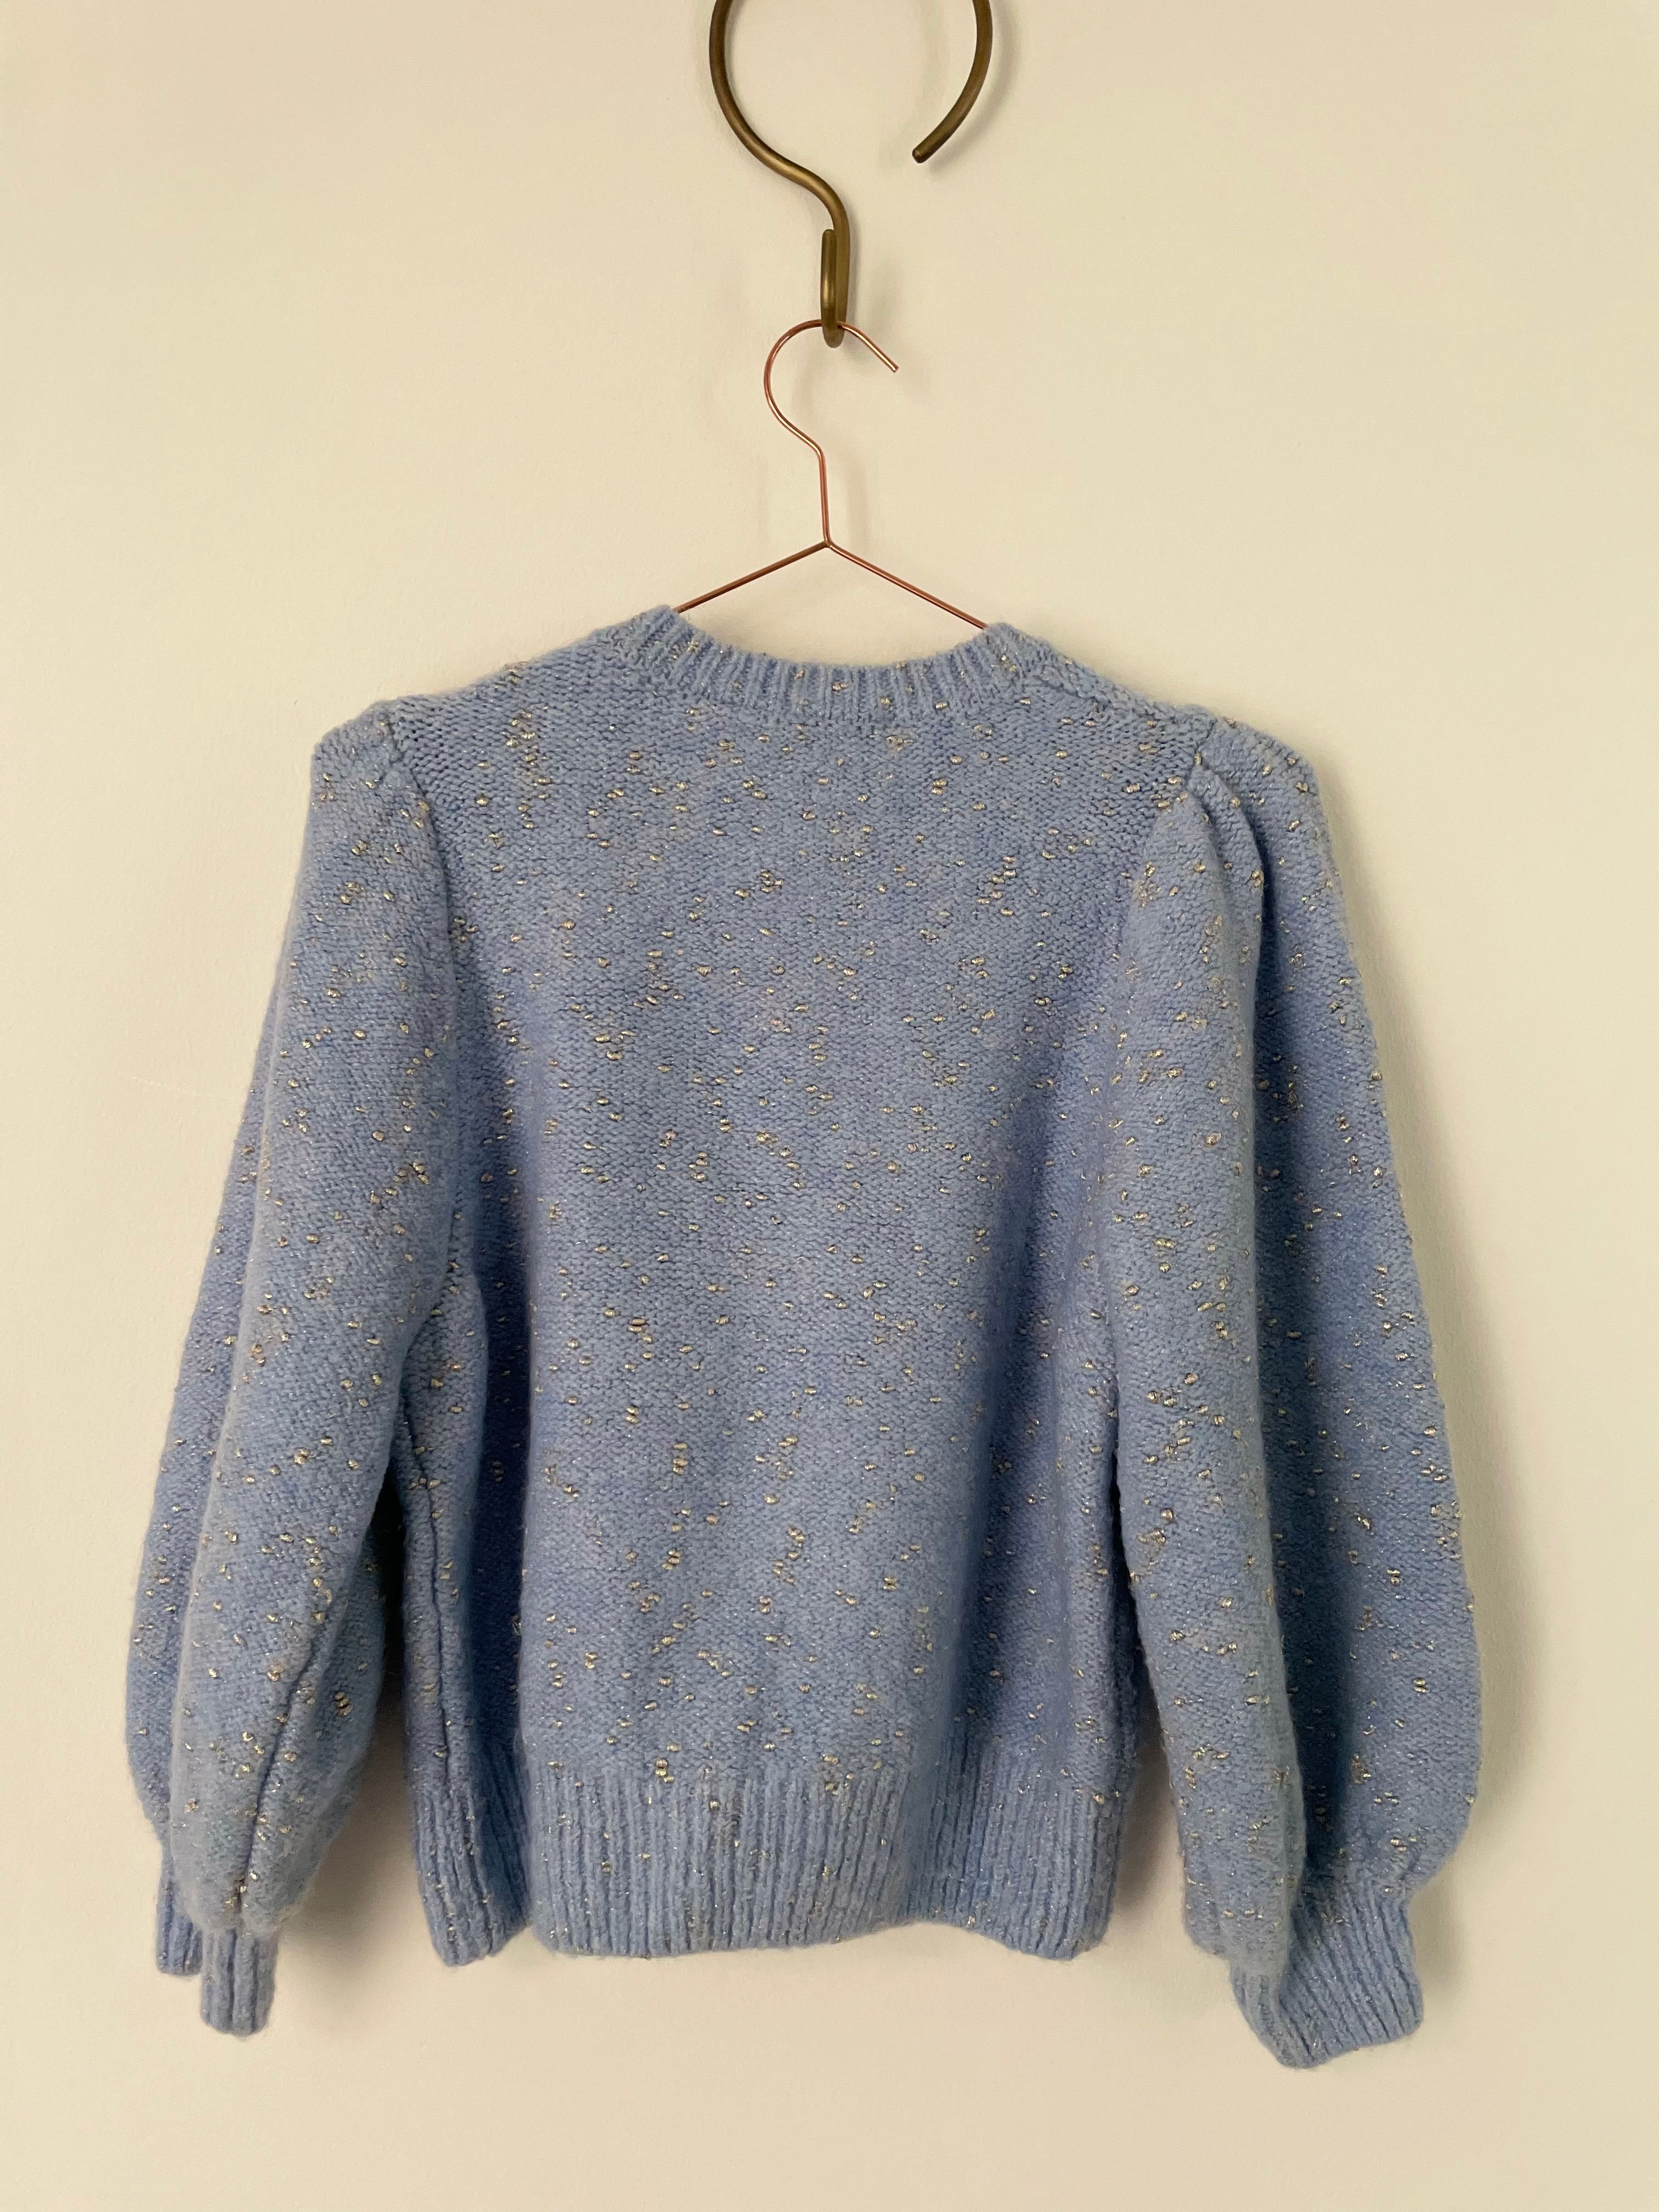 Blue & metallic knit jumper - ZARA - L